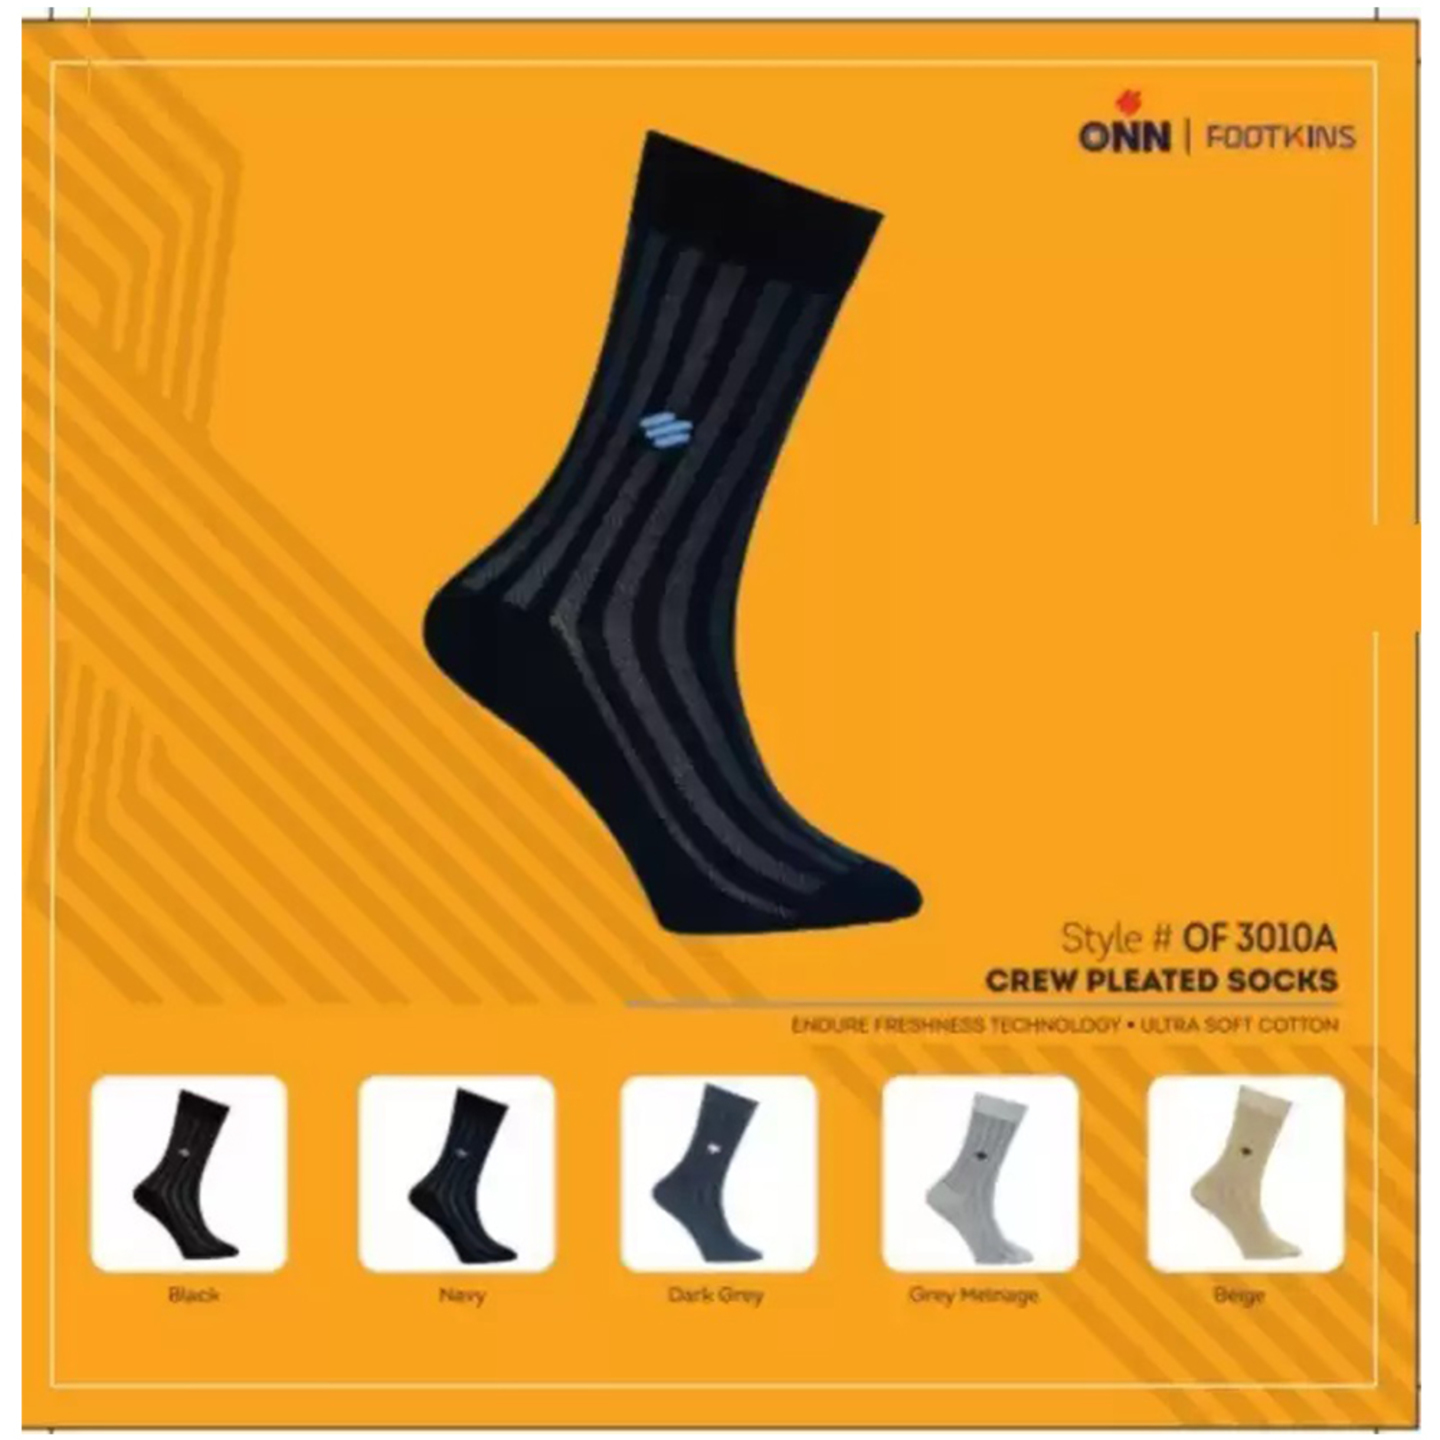 Self Design Mid-CalfCrew Pleated Socks for Men